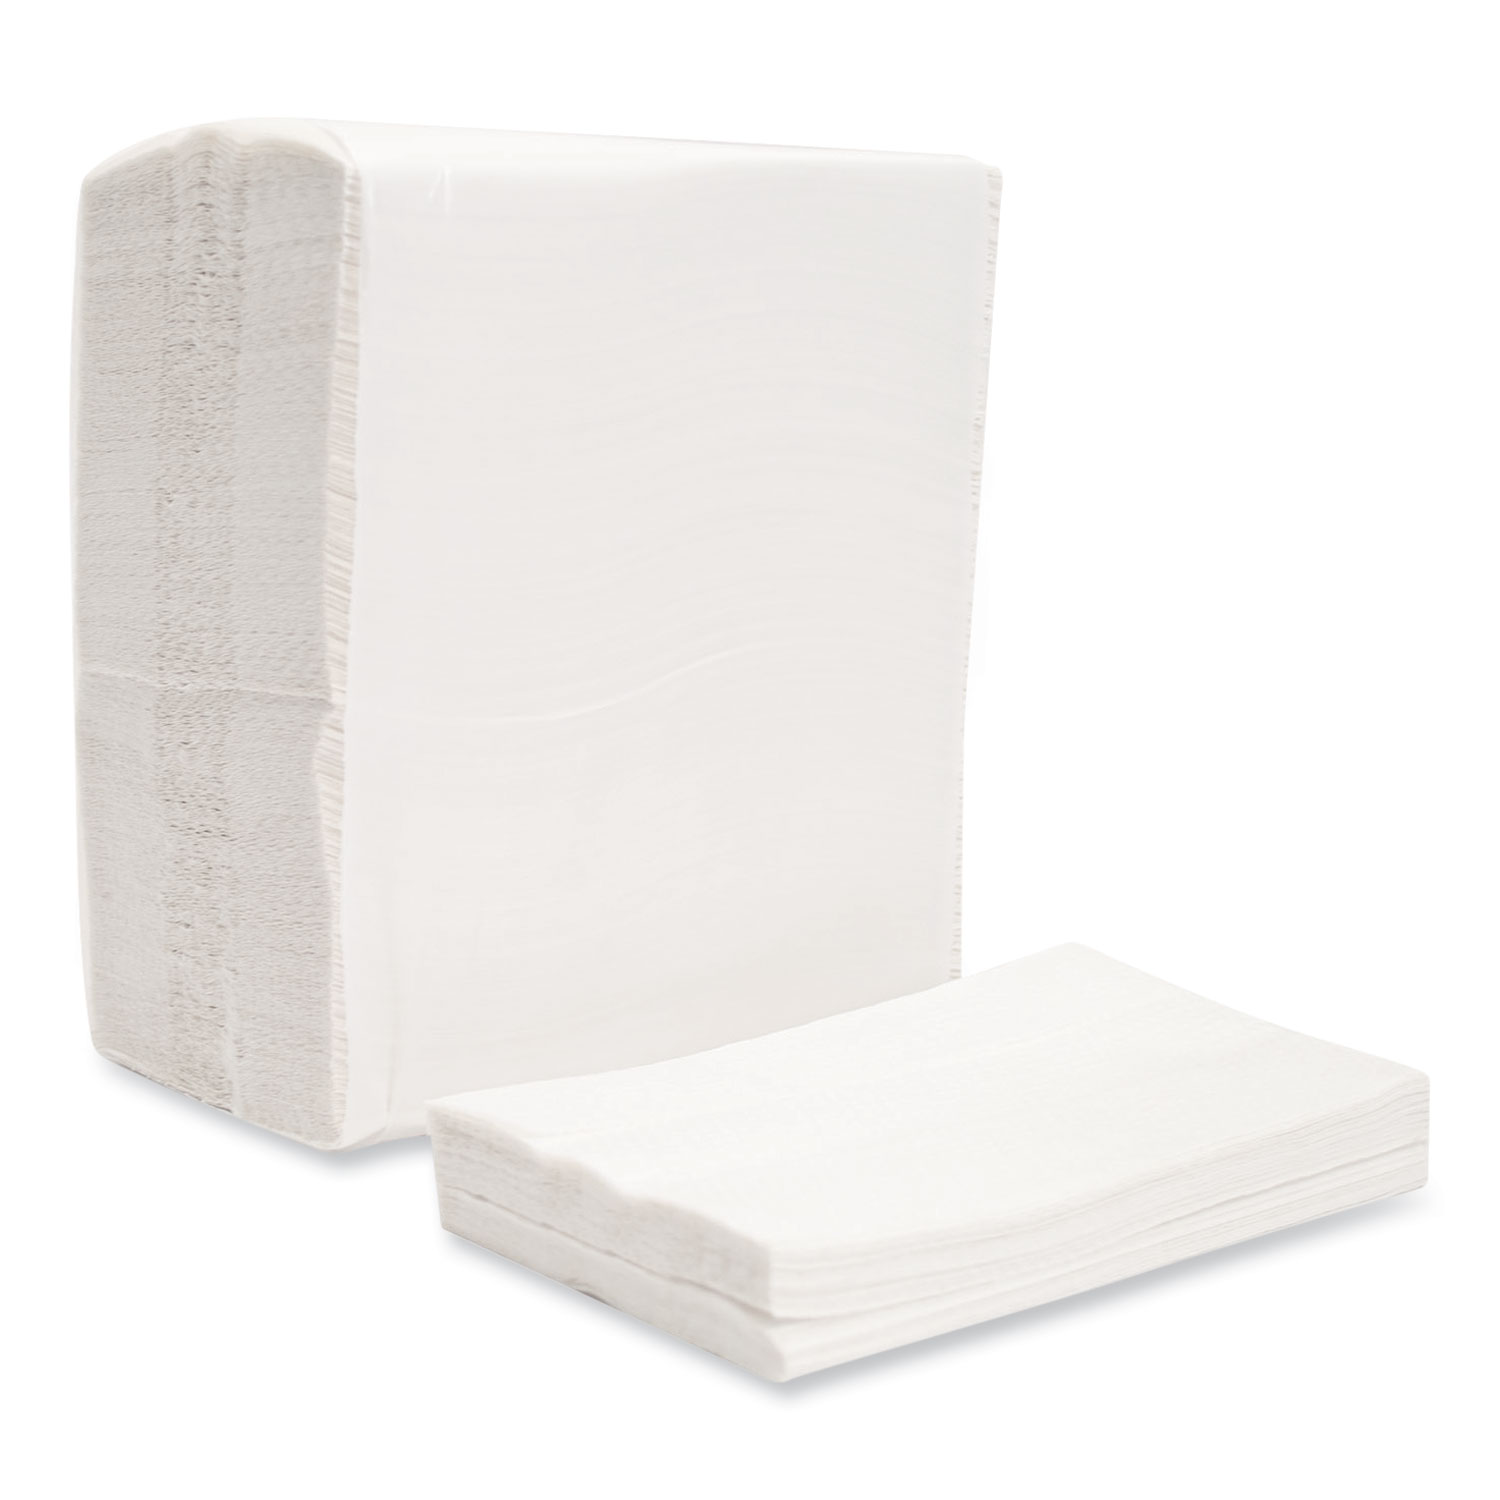 Morcon Tissue Morsoft Dispenser Napkins, 1-Ply, 6 x 13.5, White, 500 ...